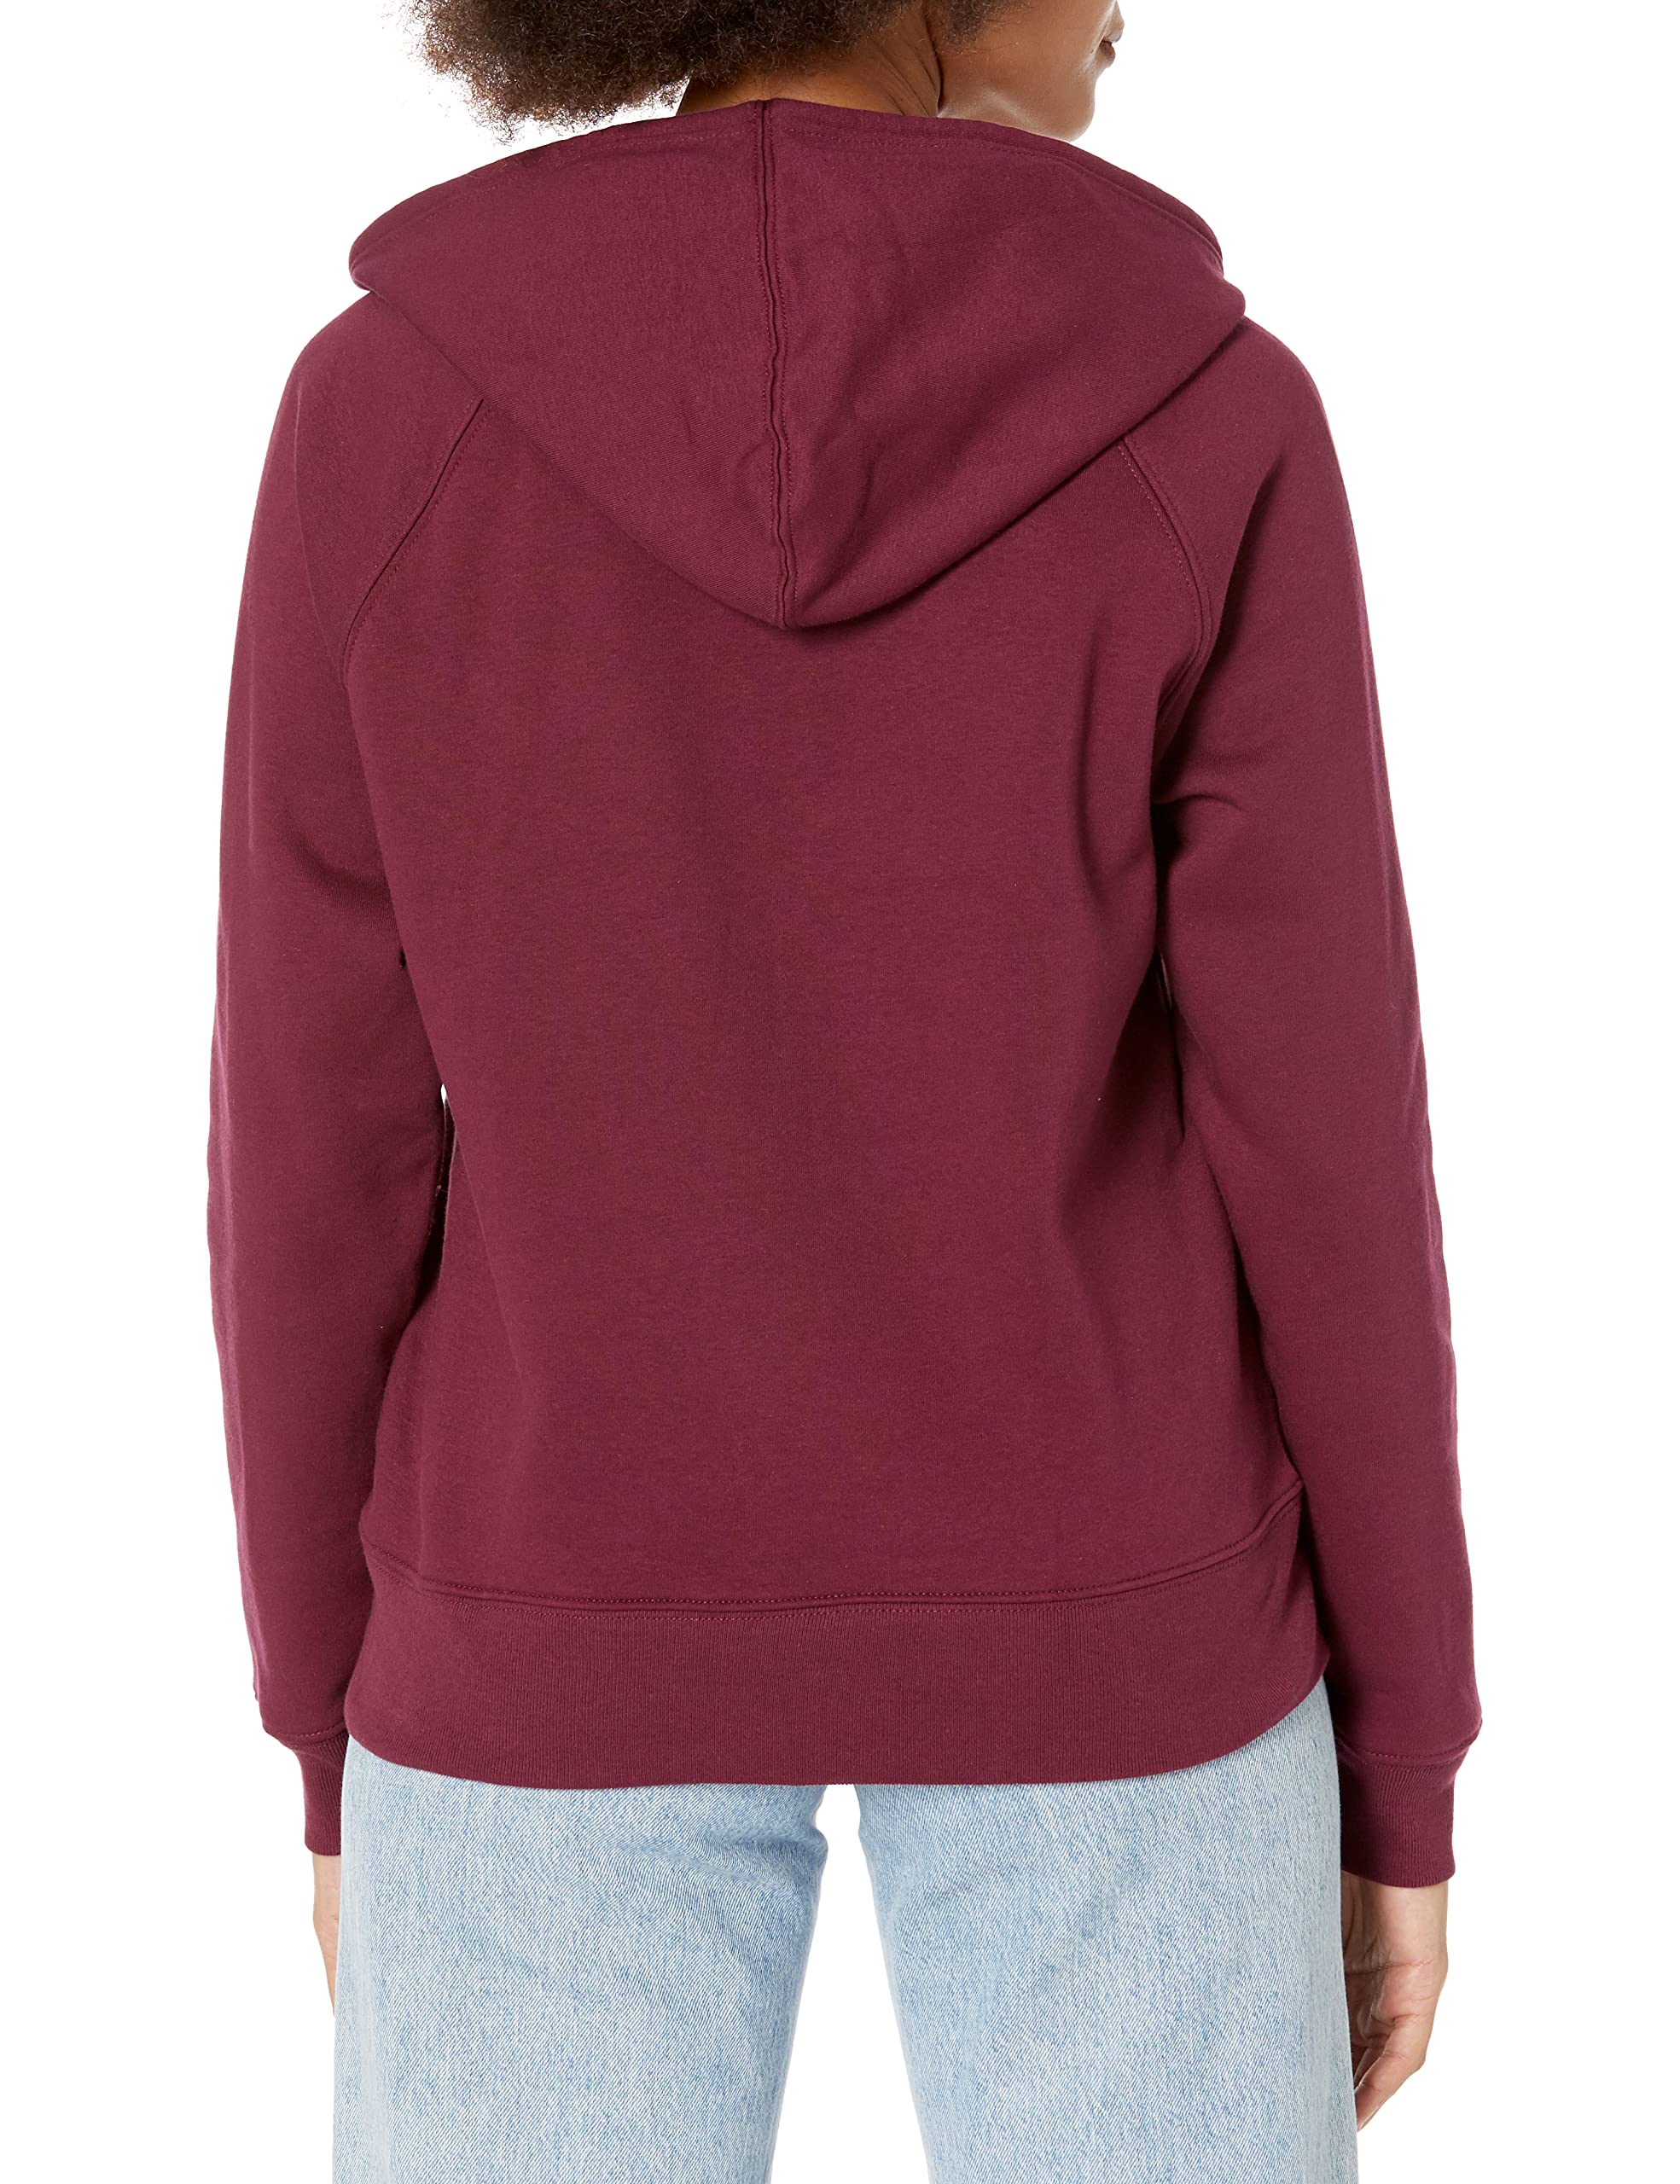 GAP Women's Logo Hoodie Hooded Full Zip Sweatshirt